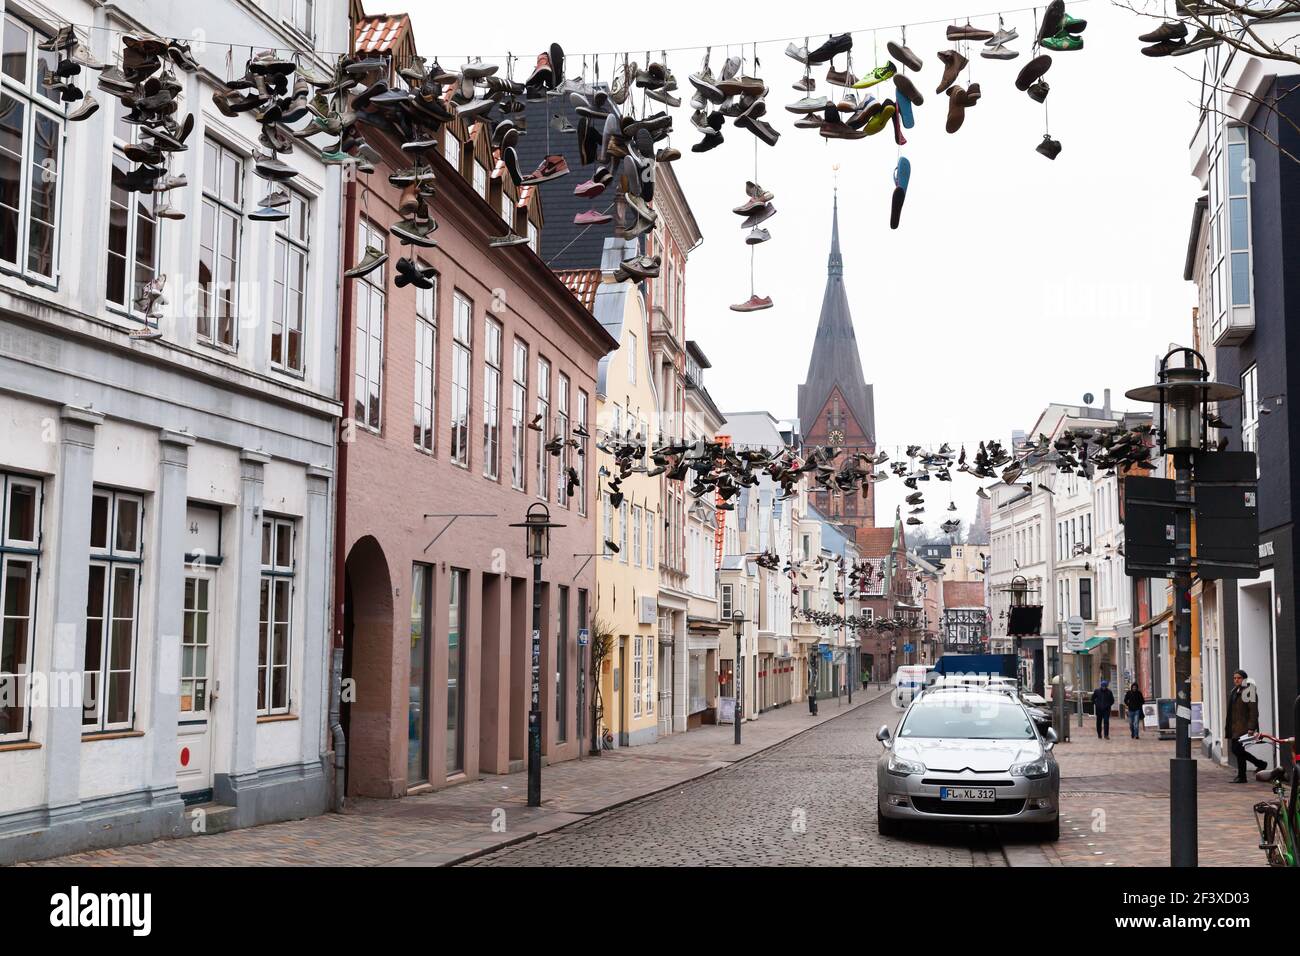 Flensburg, Allemagne - 10 février 2017 : beaucoup de chaussures sportives pendent sur des fils, vue sur la rue de Flensburg. Les gens ordinaires marchent dans la rue Banque D'Images